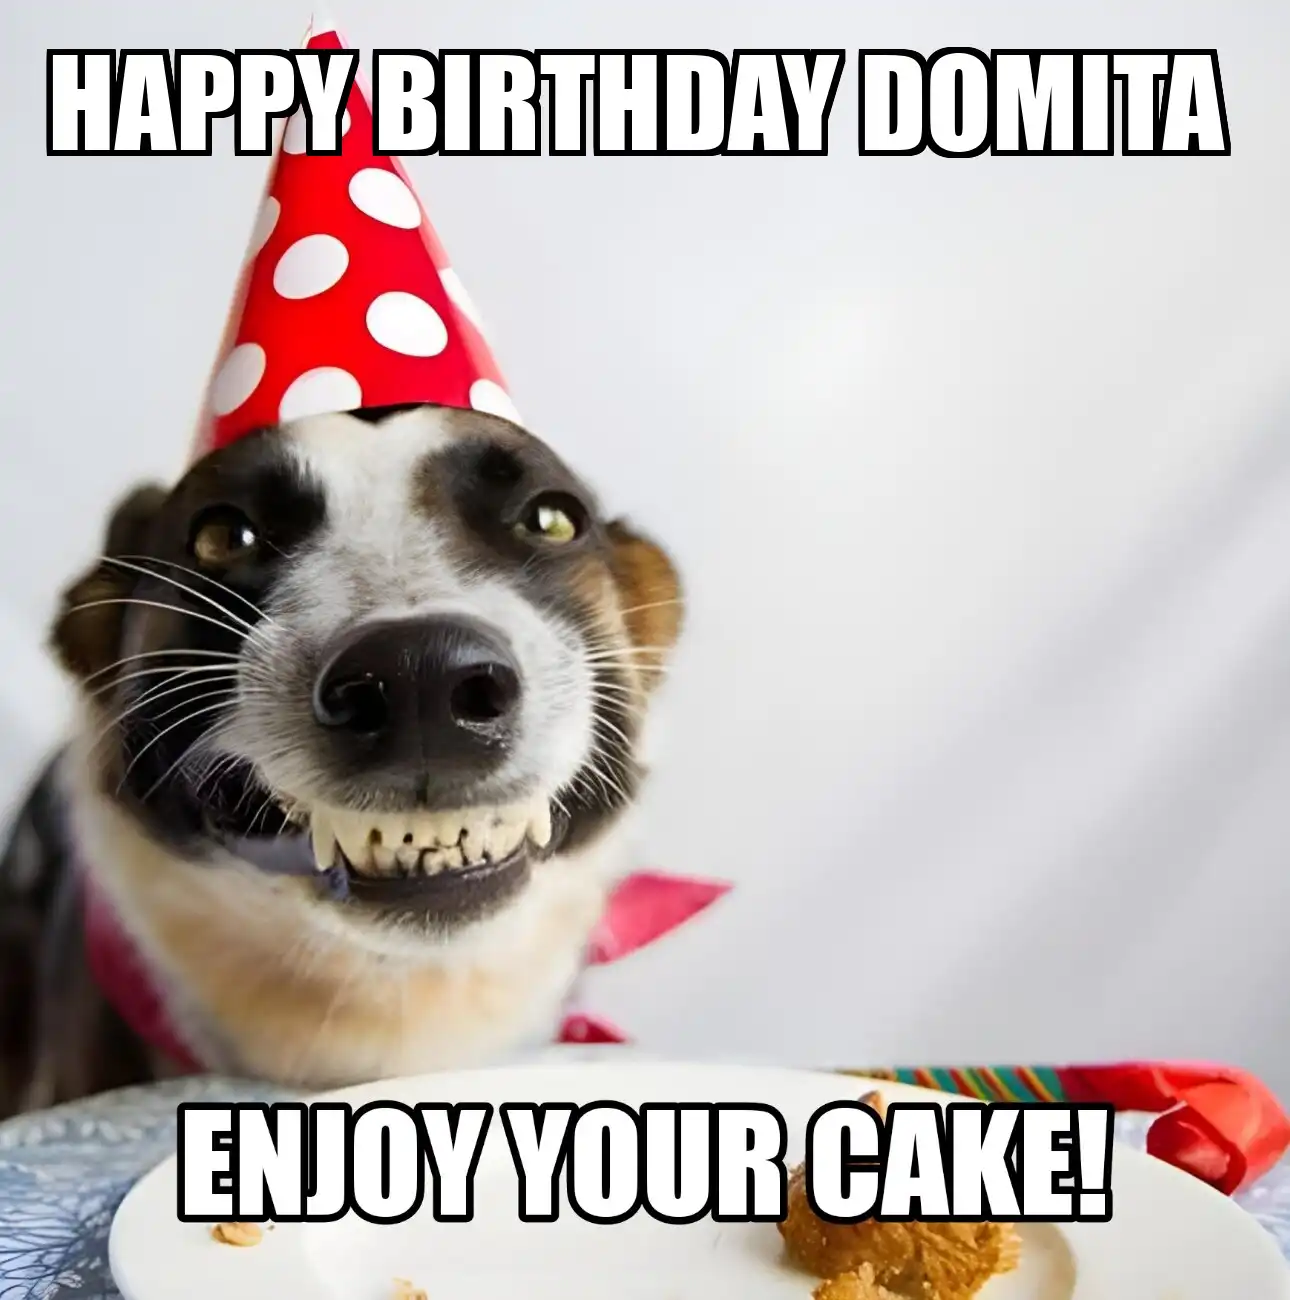 Happy Birthday Domita Enjoy Your Cake Dog Meme